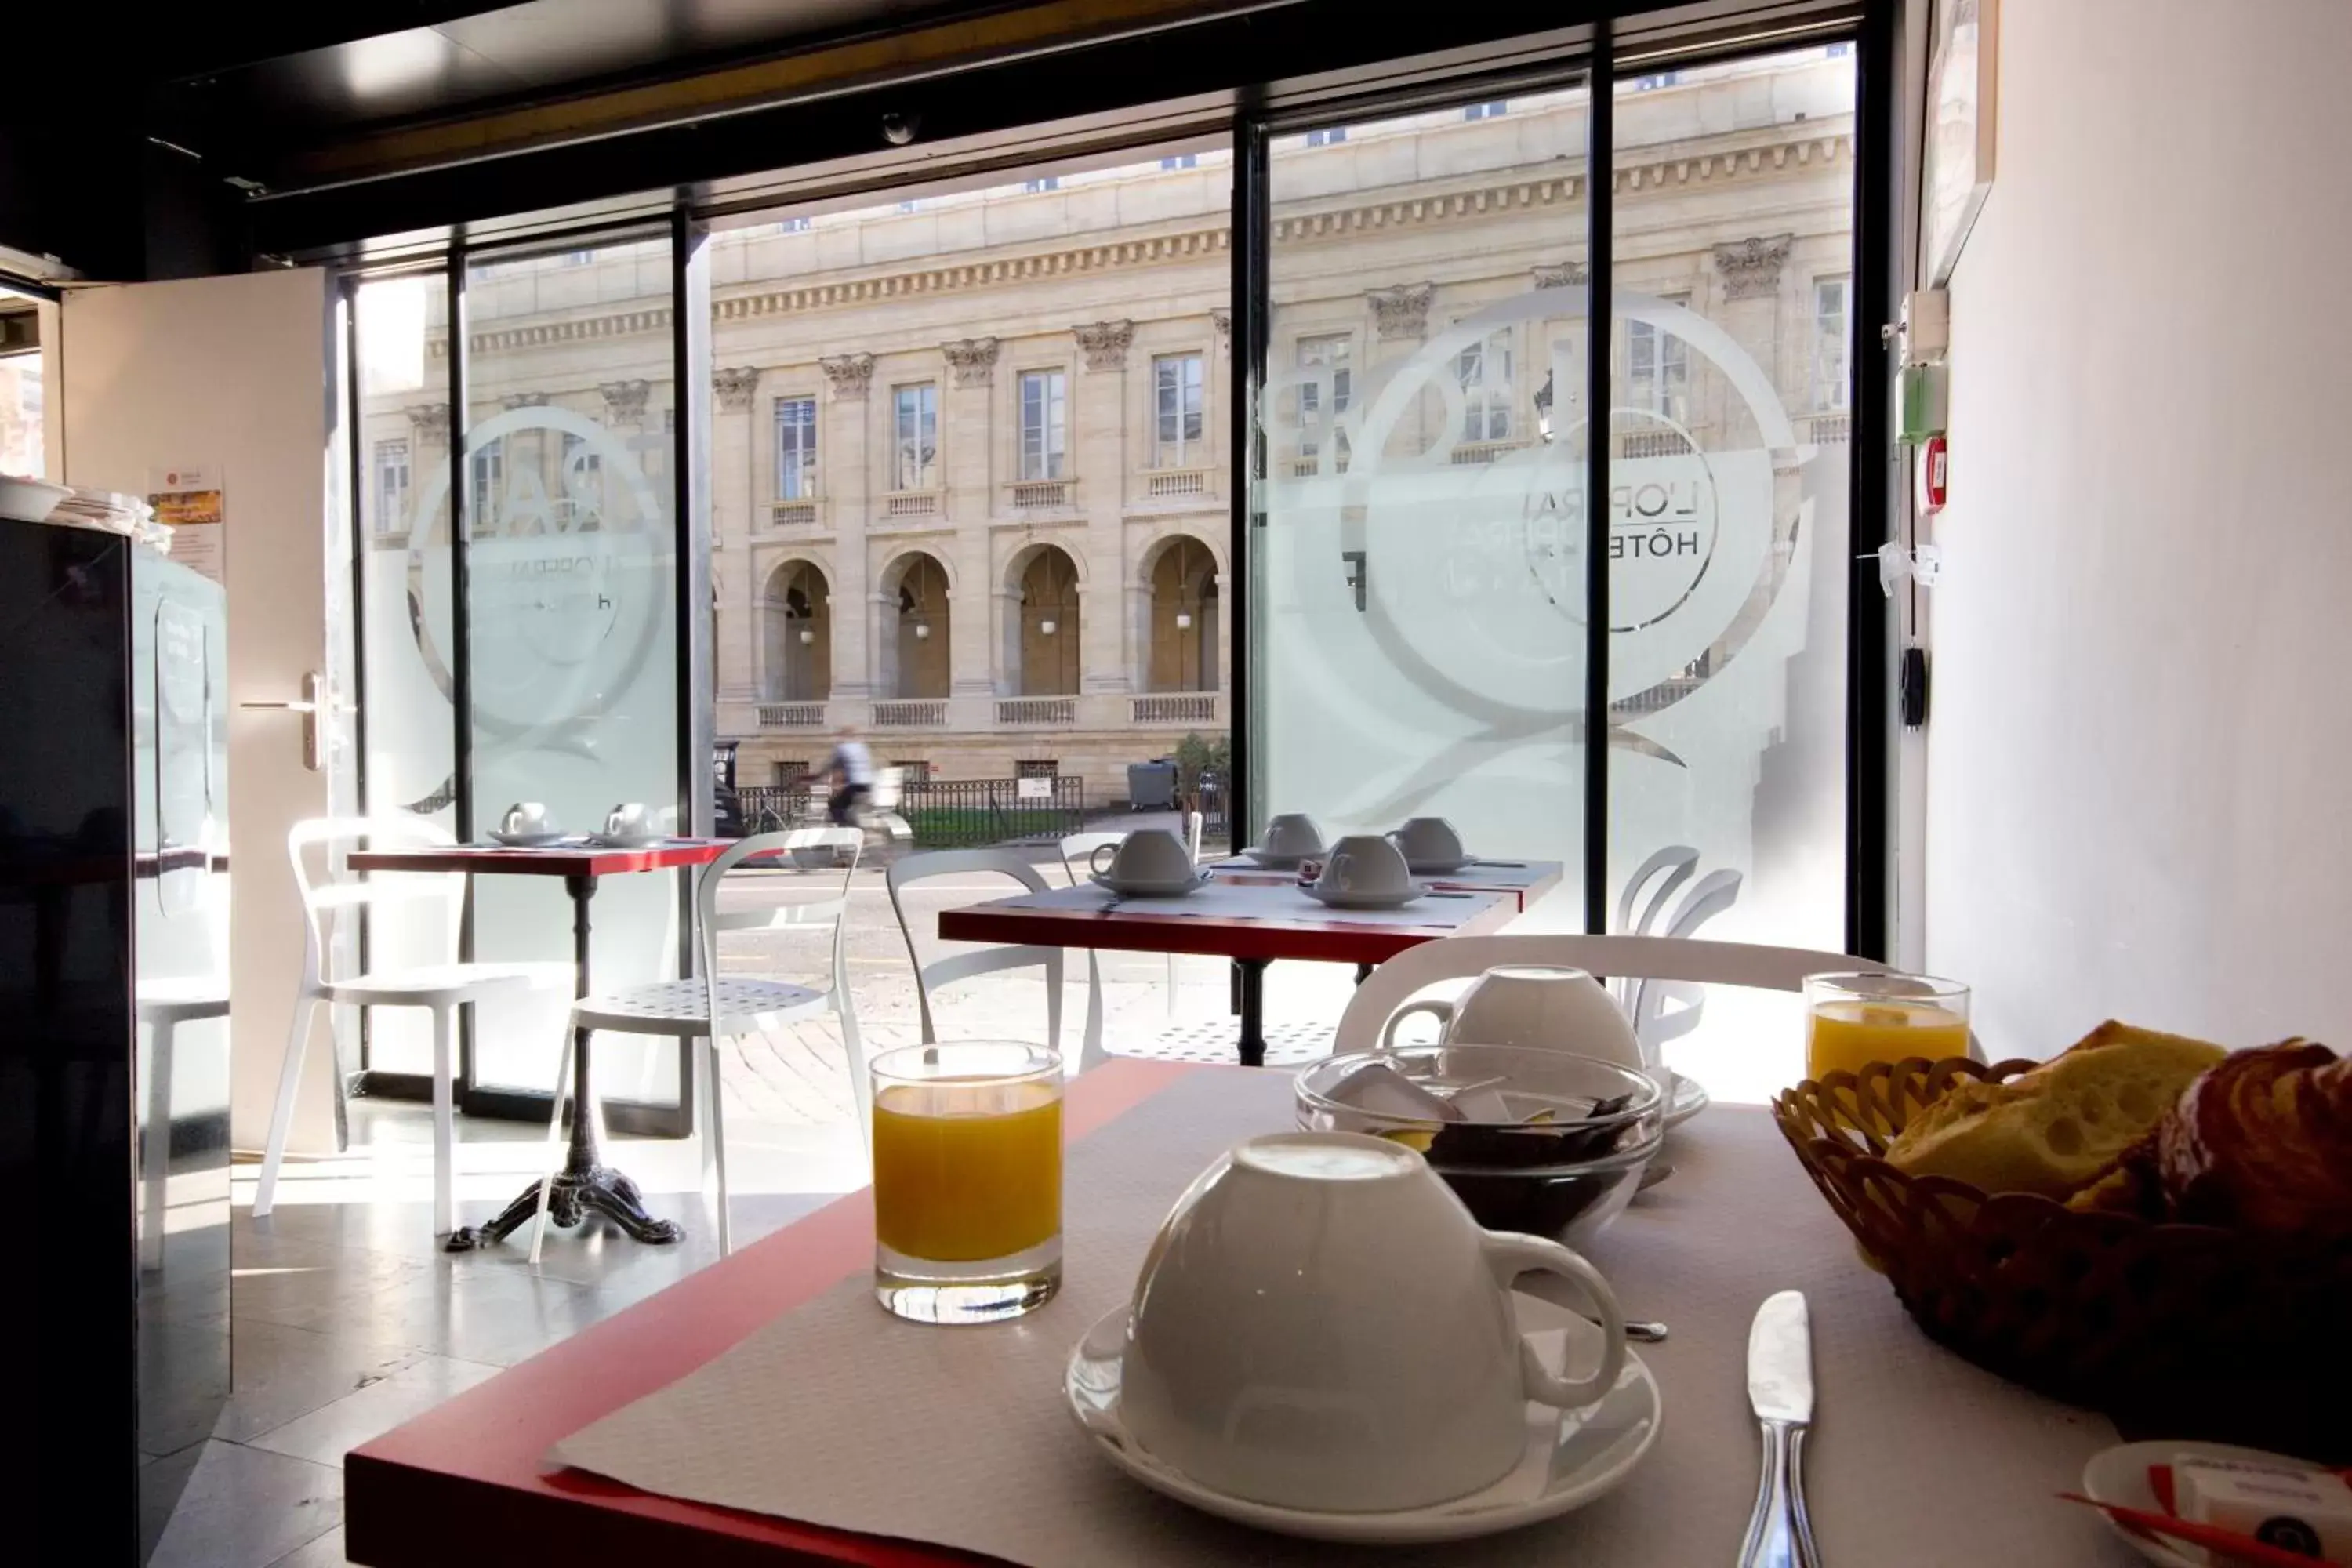 Continental breakfast in Hotel de L'Opéra